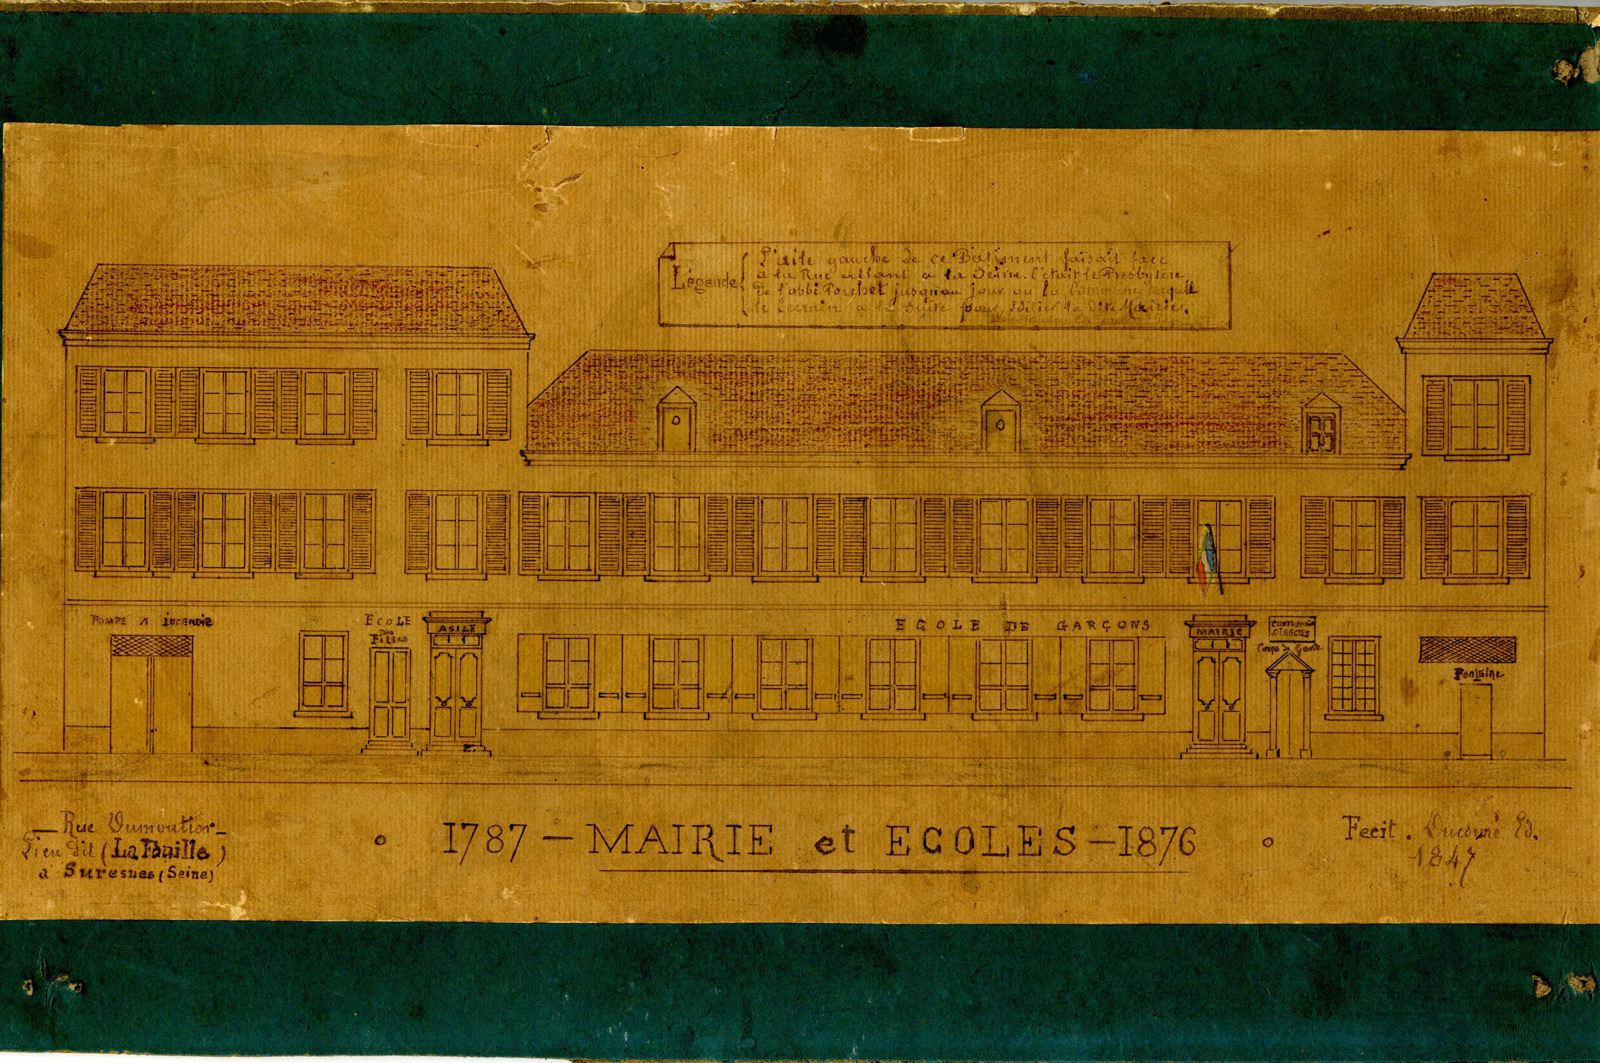 Mairie et Ecoles - 1787-1876